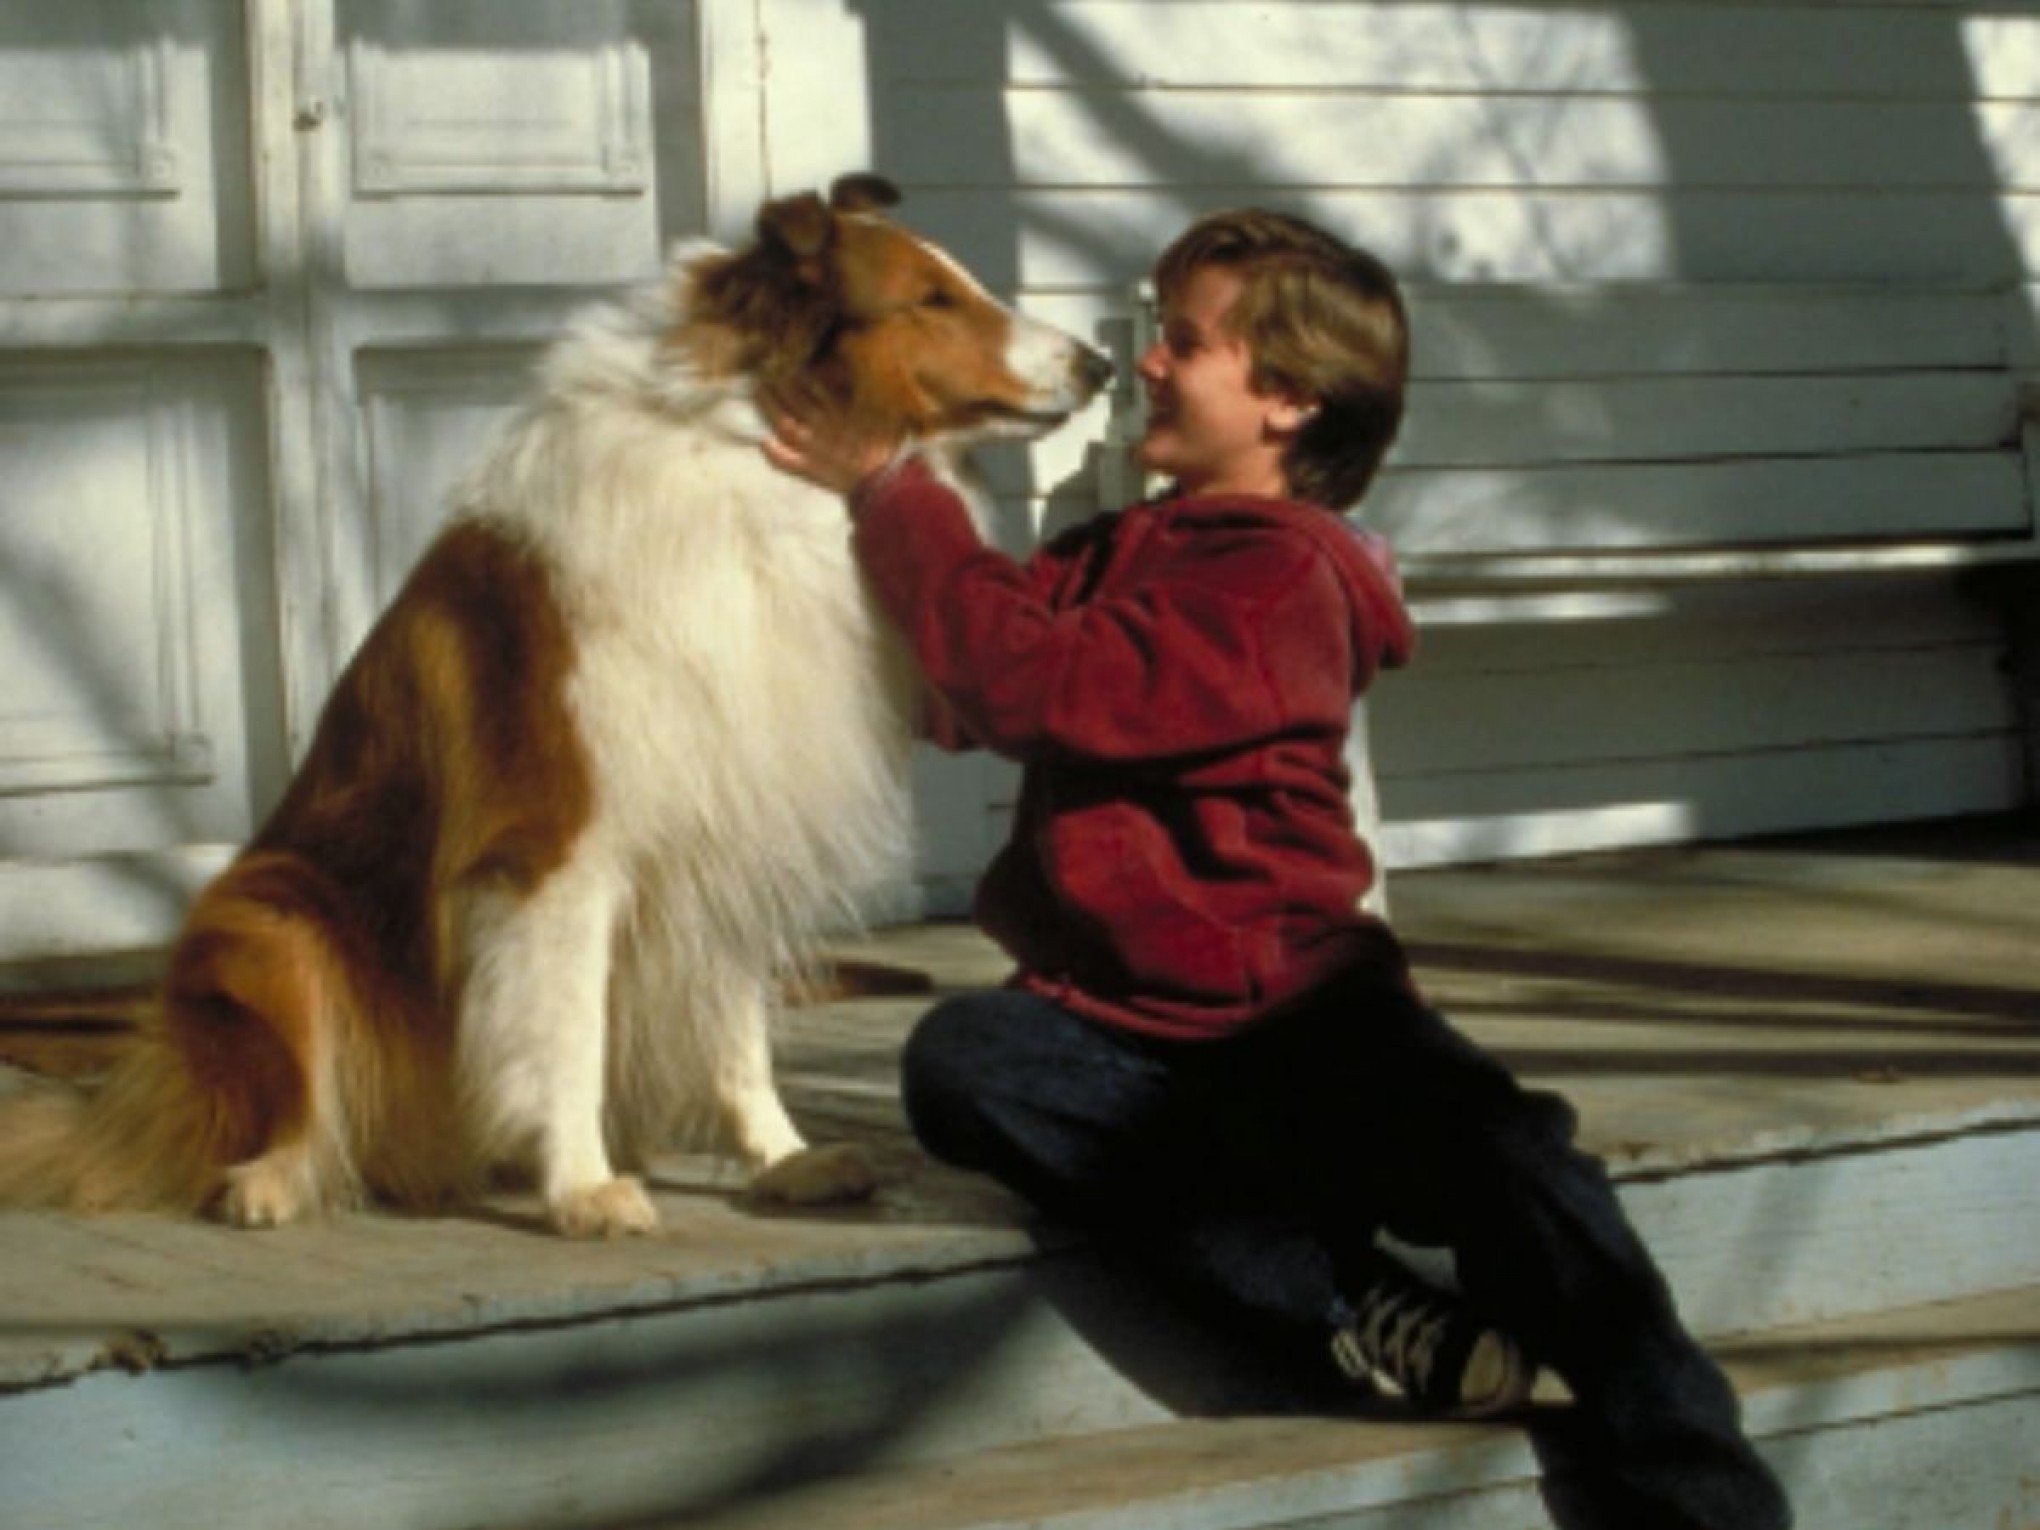 Ator de Lassie é preso após quebrar carro e ameaçar vizinho com faca